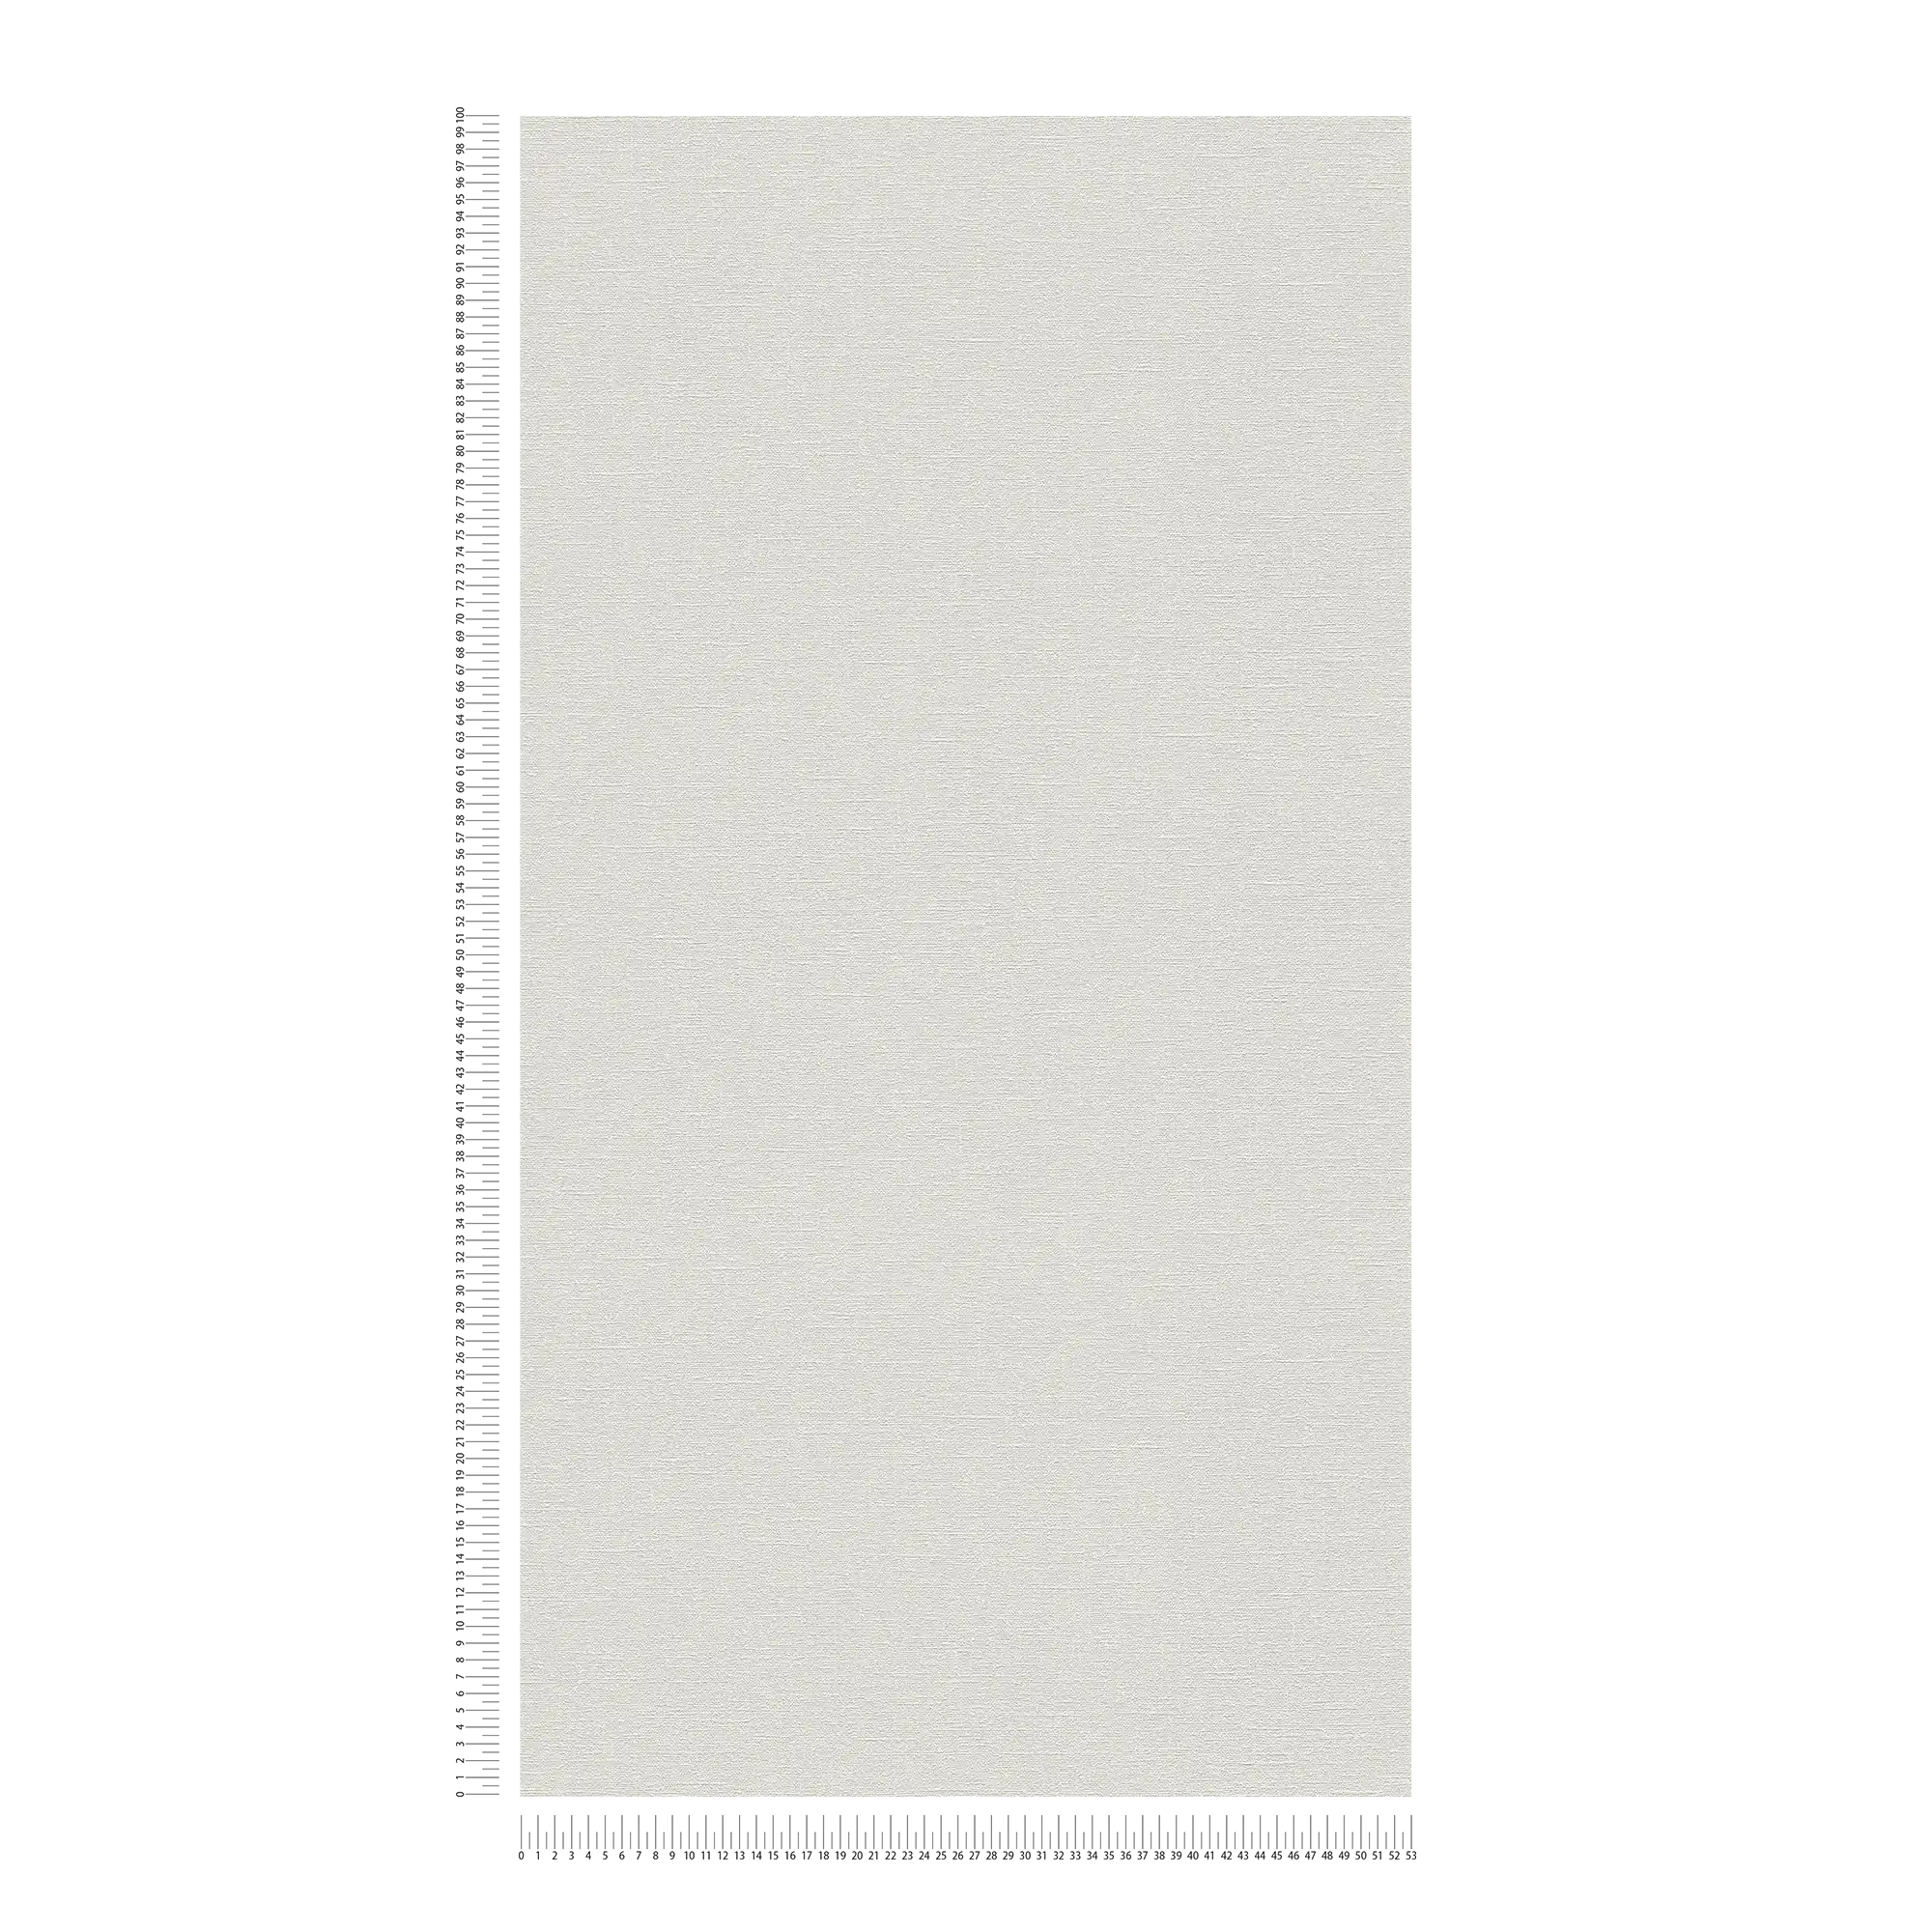             Papier peint à texture fine sans PVC - gris, blanc
        